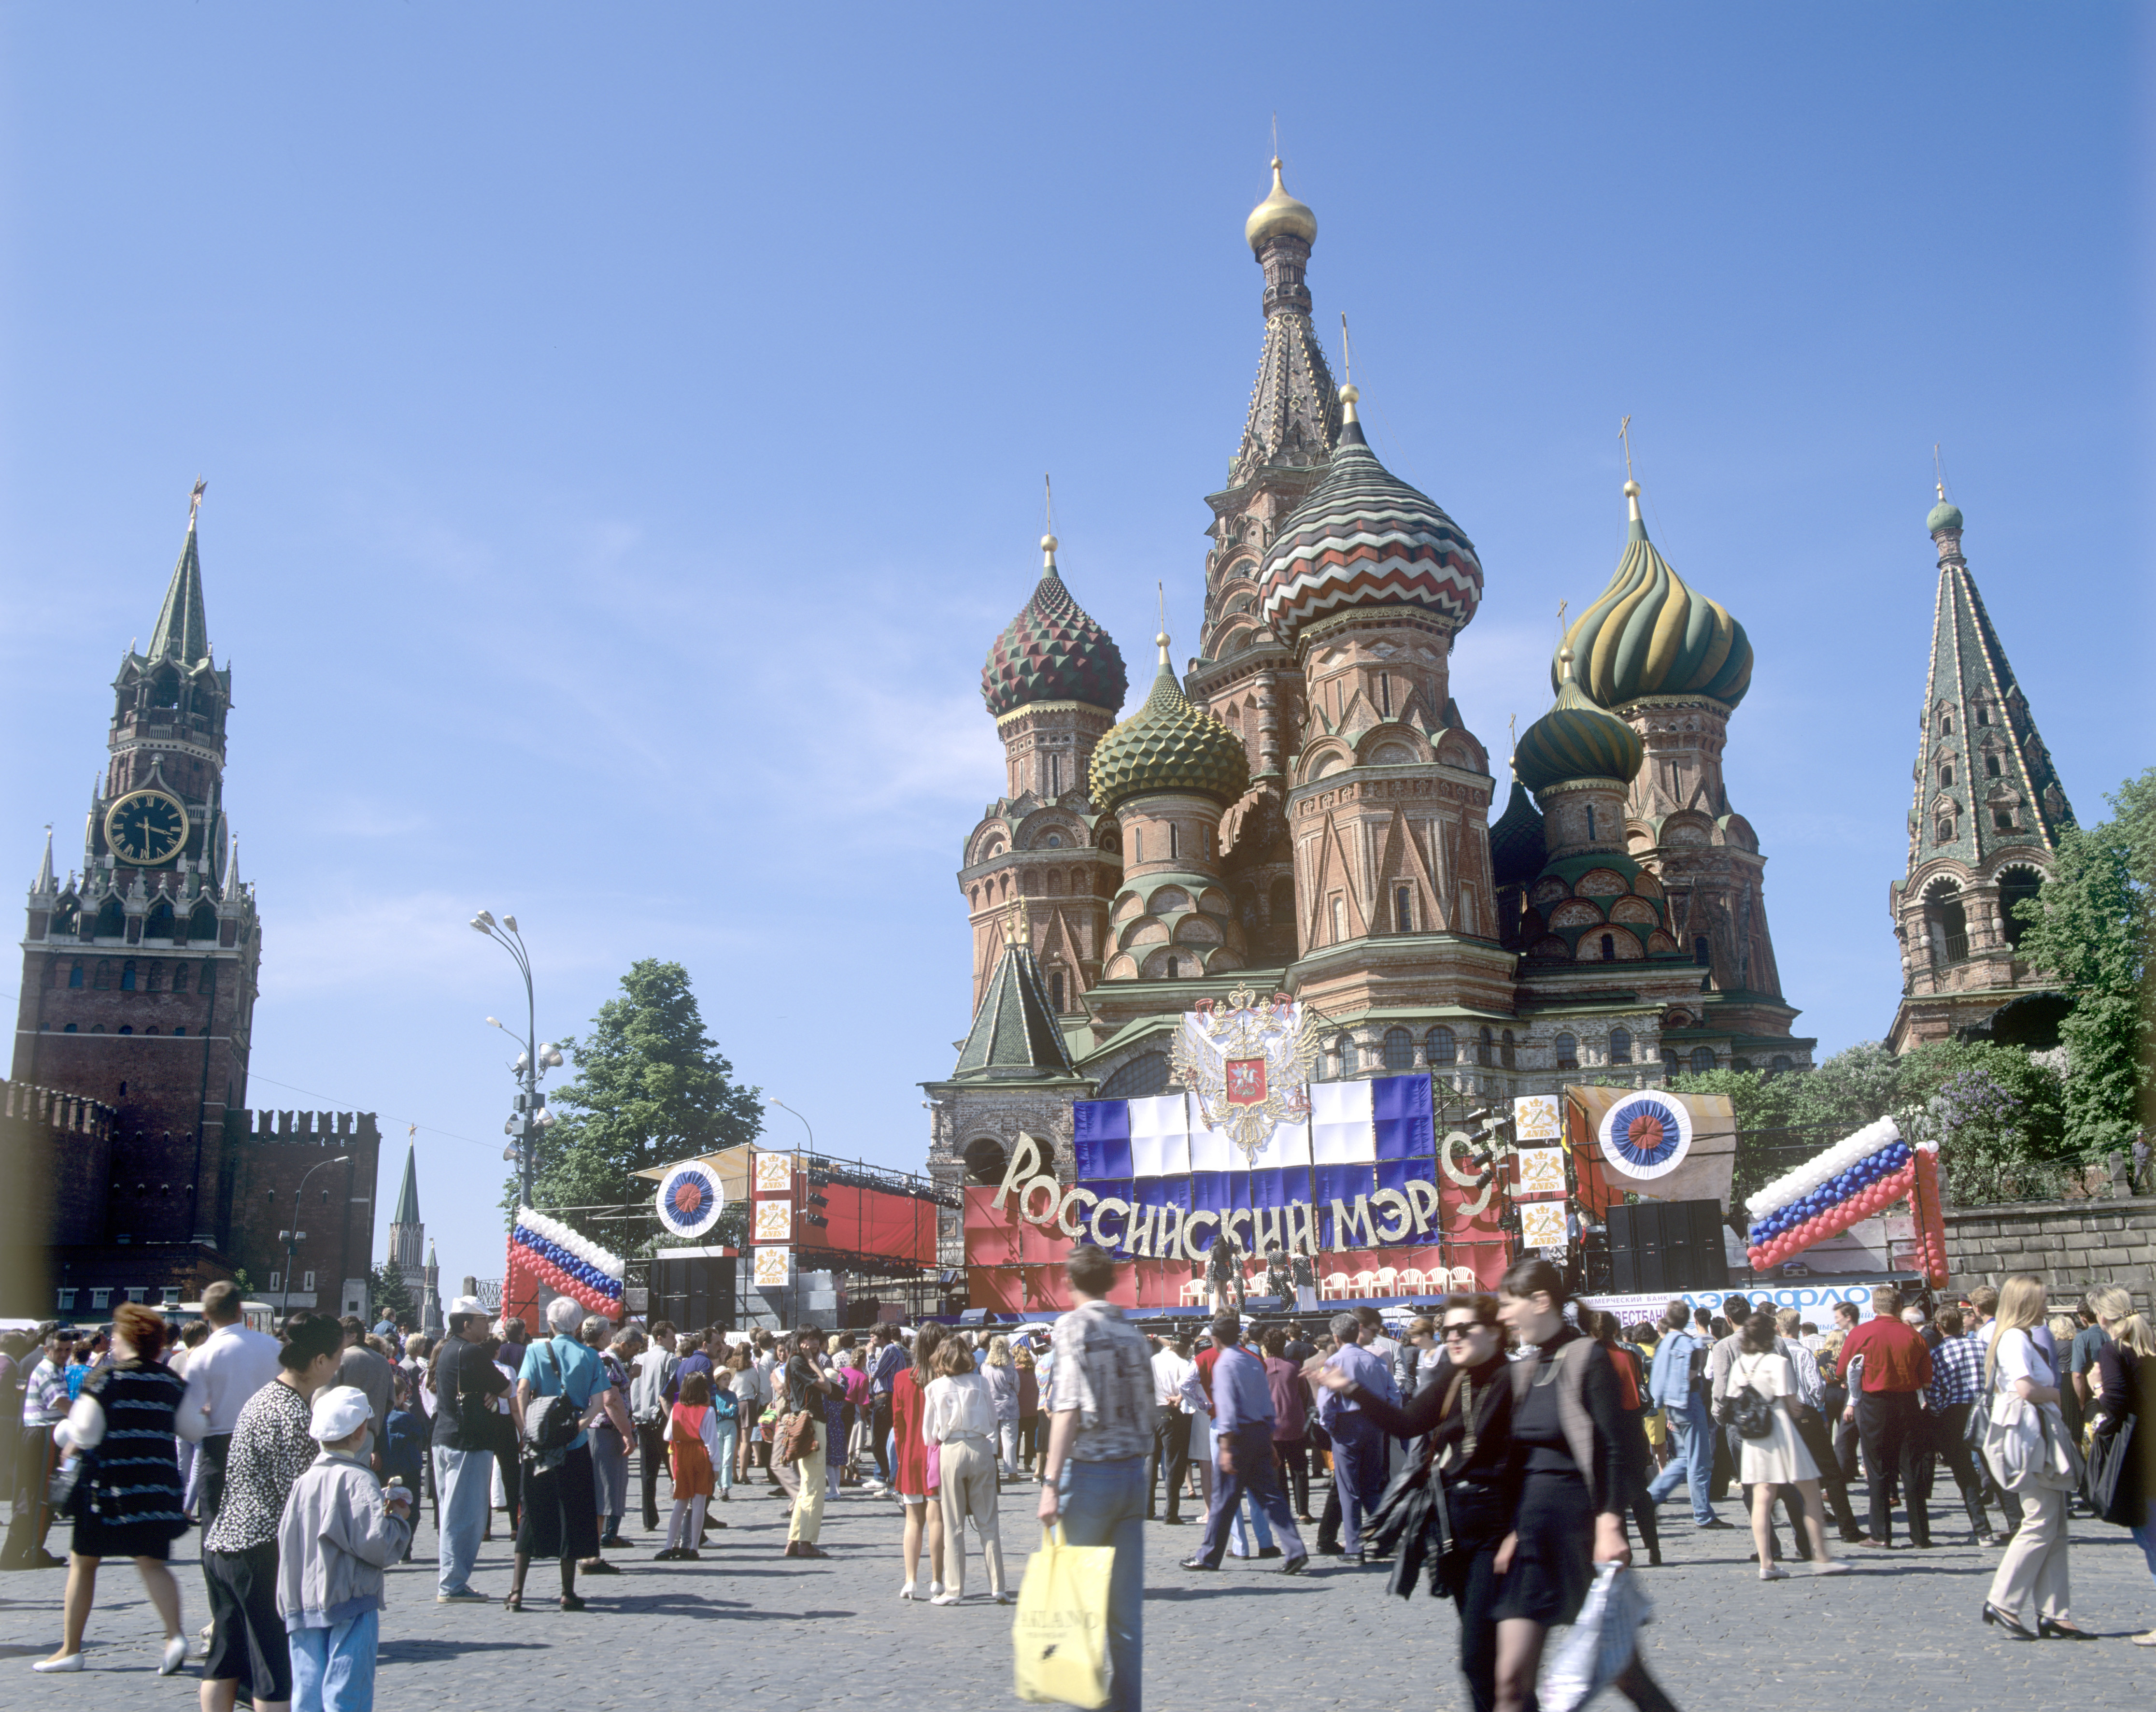 1996 год. Красная площадь во время праздника "Российский мэр". Фото: © РИА Новости/Владимир Вяткин